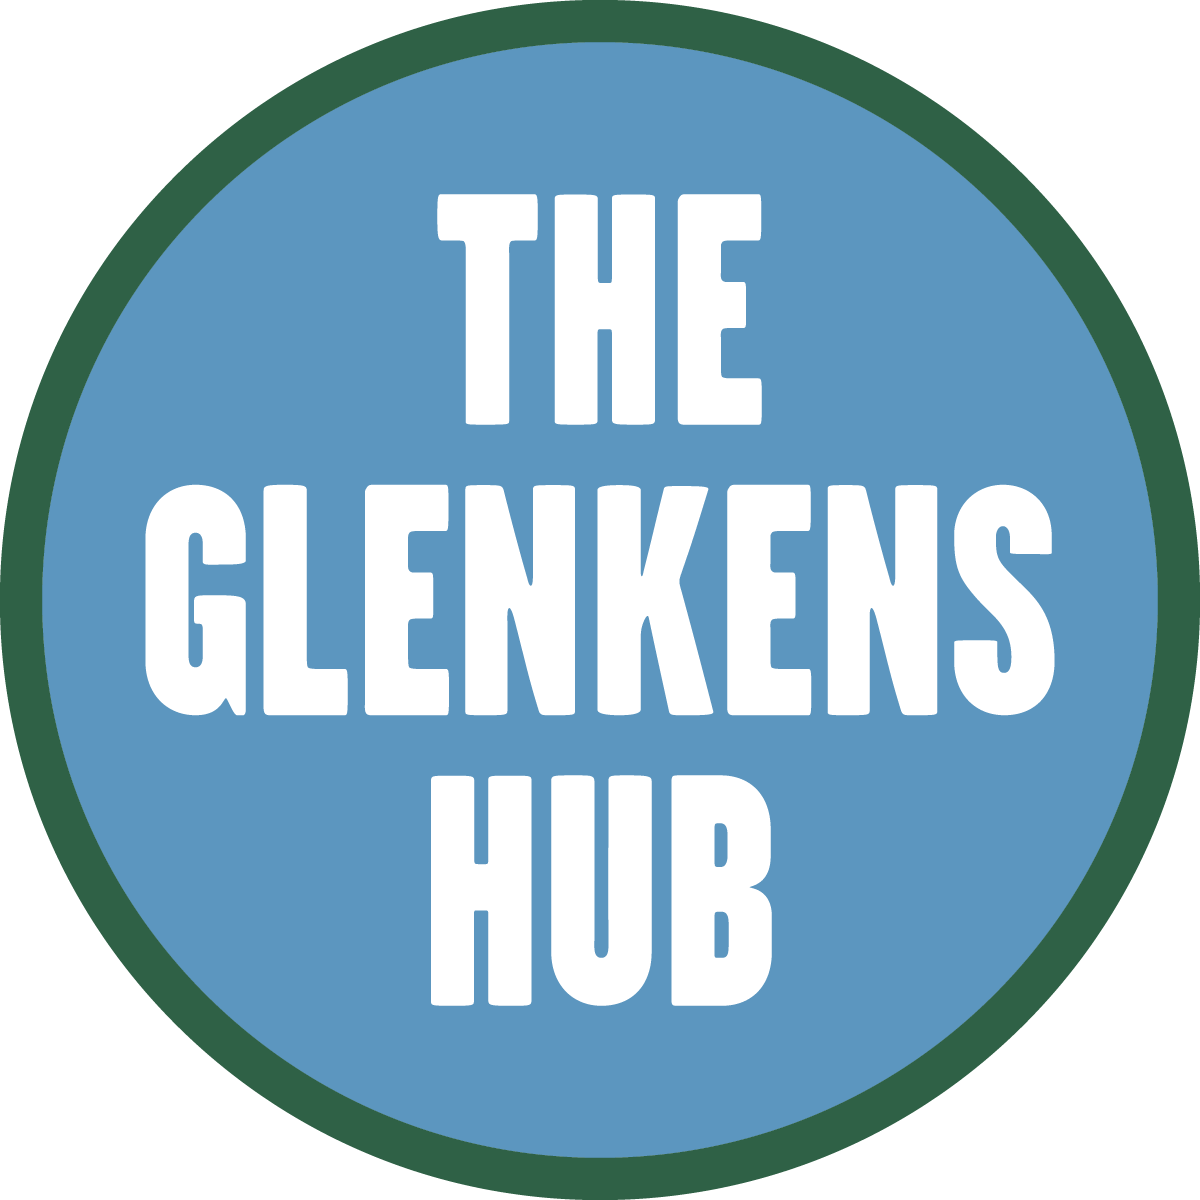 Glenkens Hub